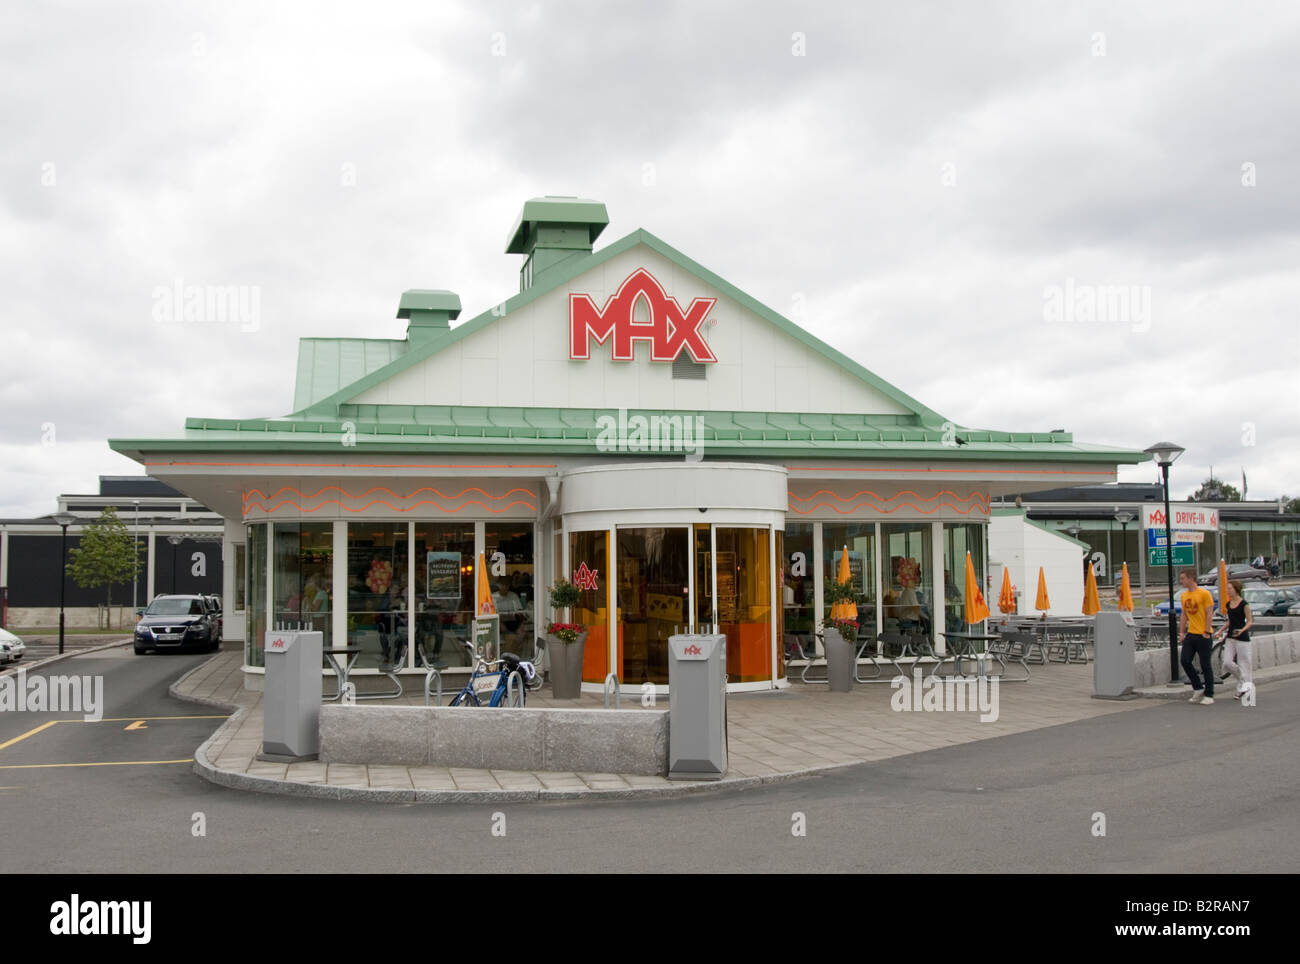 Max burger fast food restaurant chaîne suédoise junk Banque D'Images